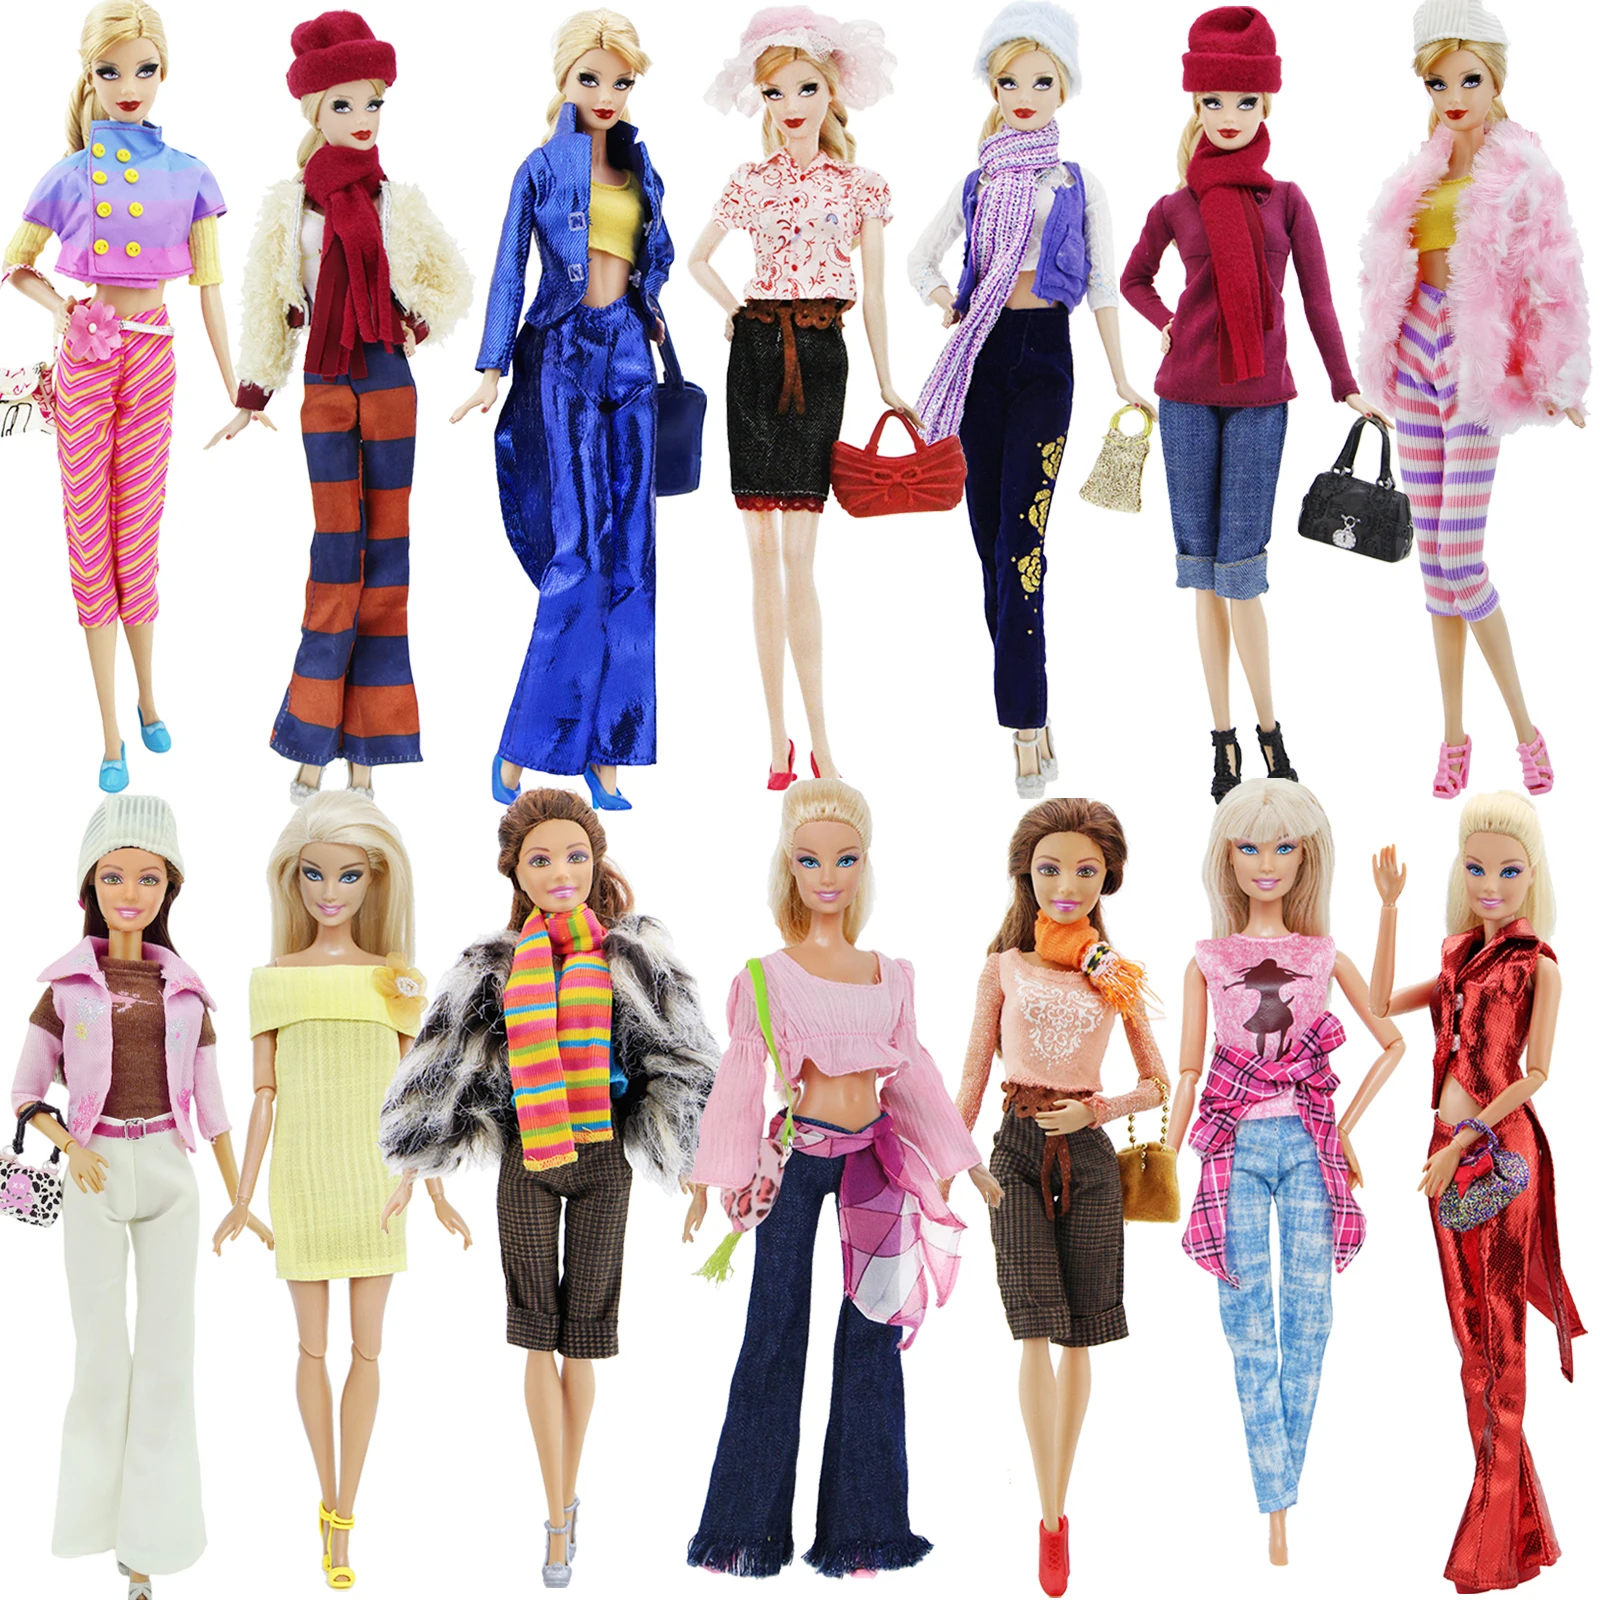 Модный наряд повседневная одежда смешанный стиль пальто брюки обувь Сумочка Аксессуары Одежда для куклы Барби DIY игрушка